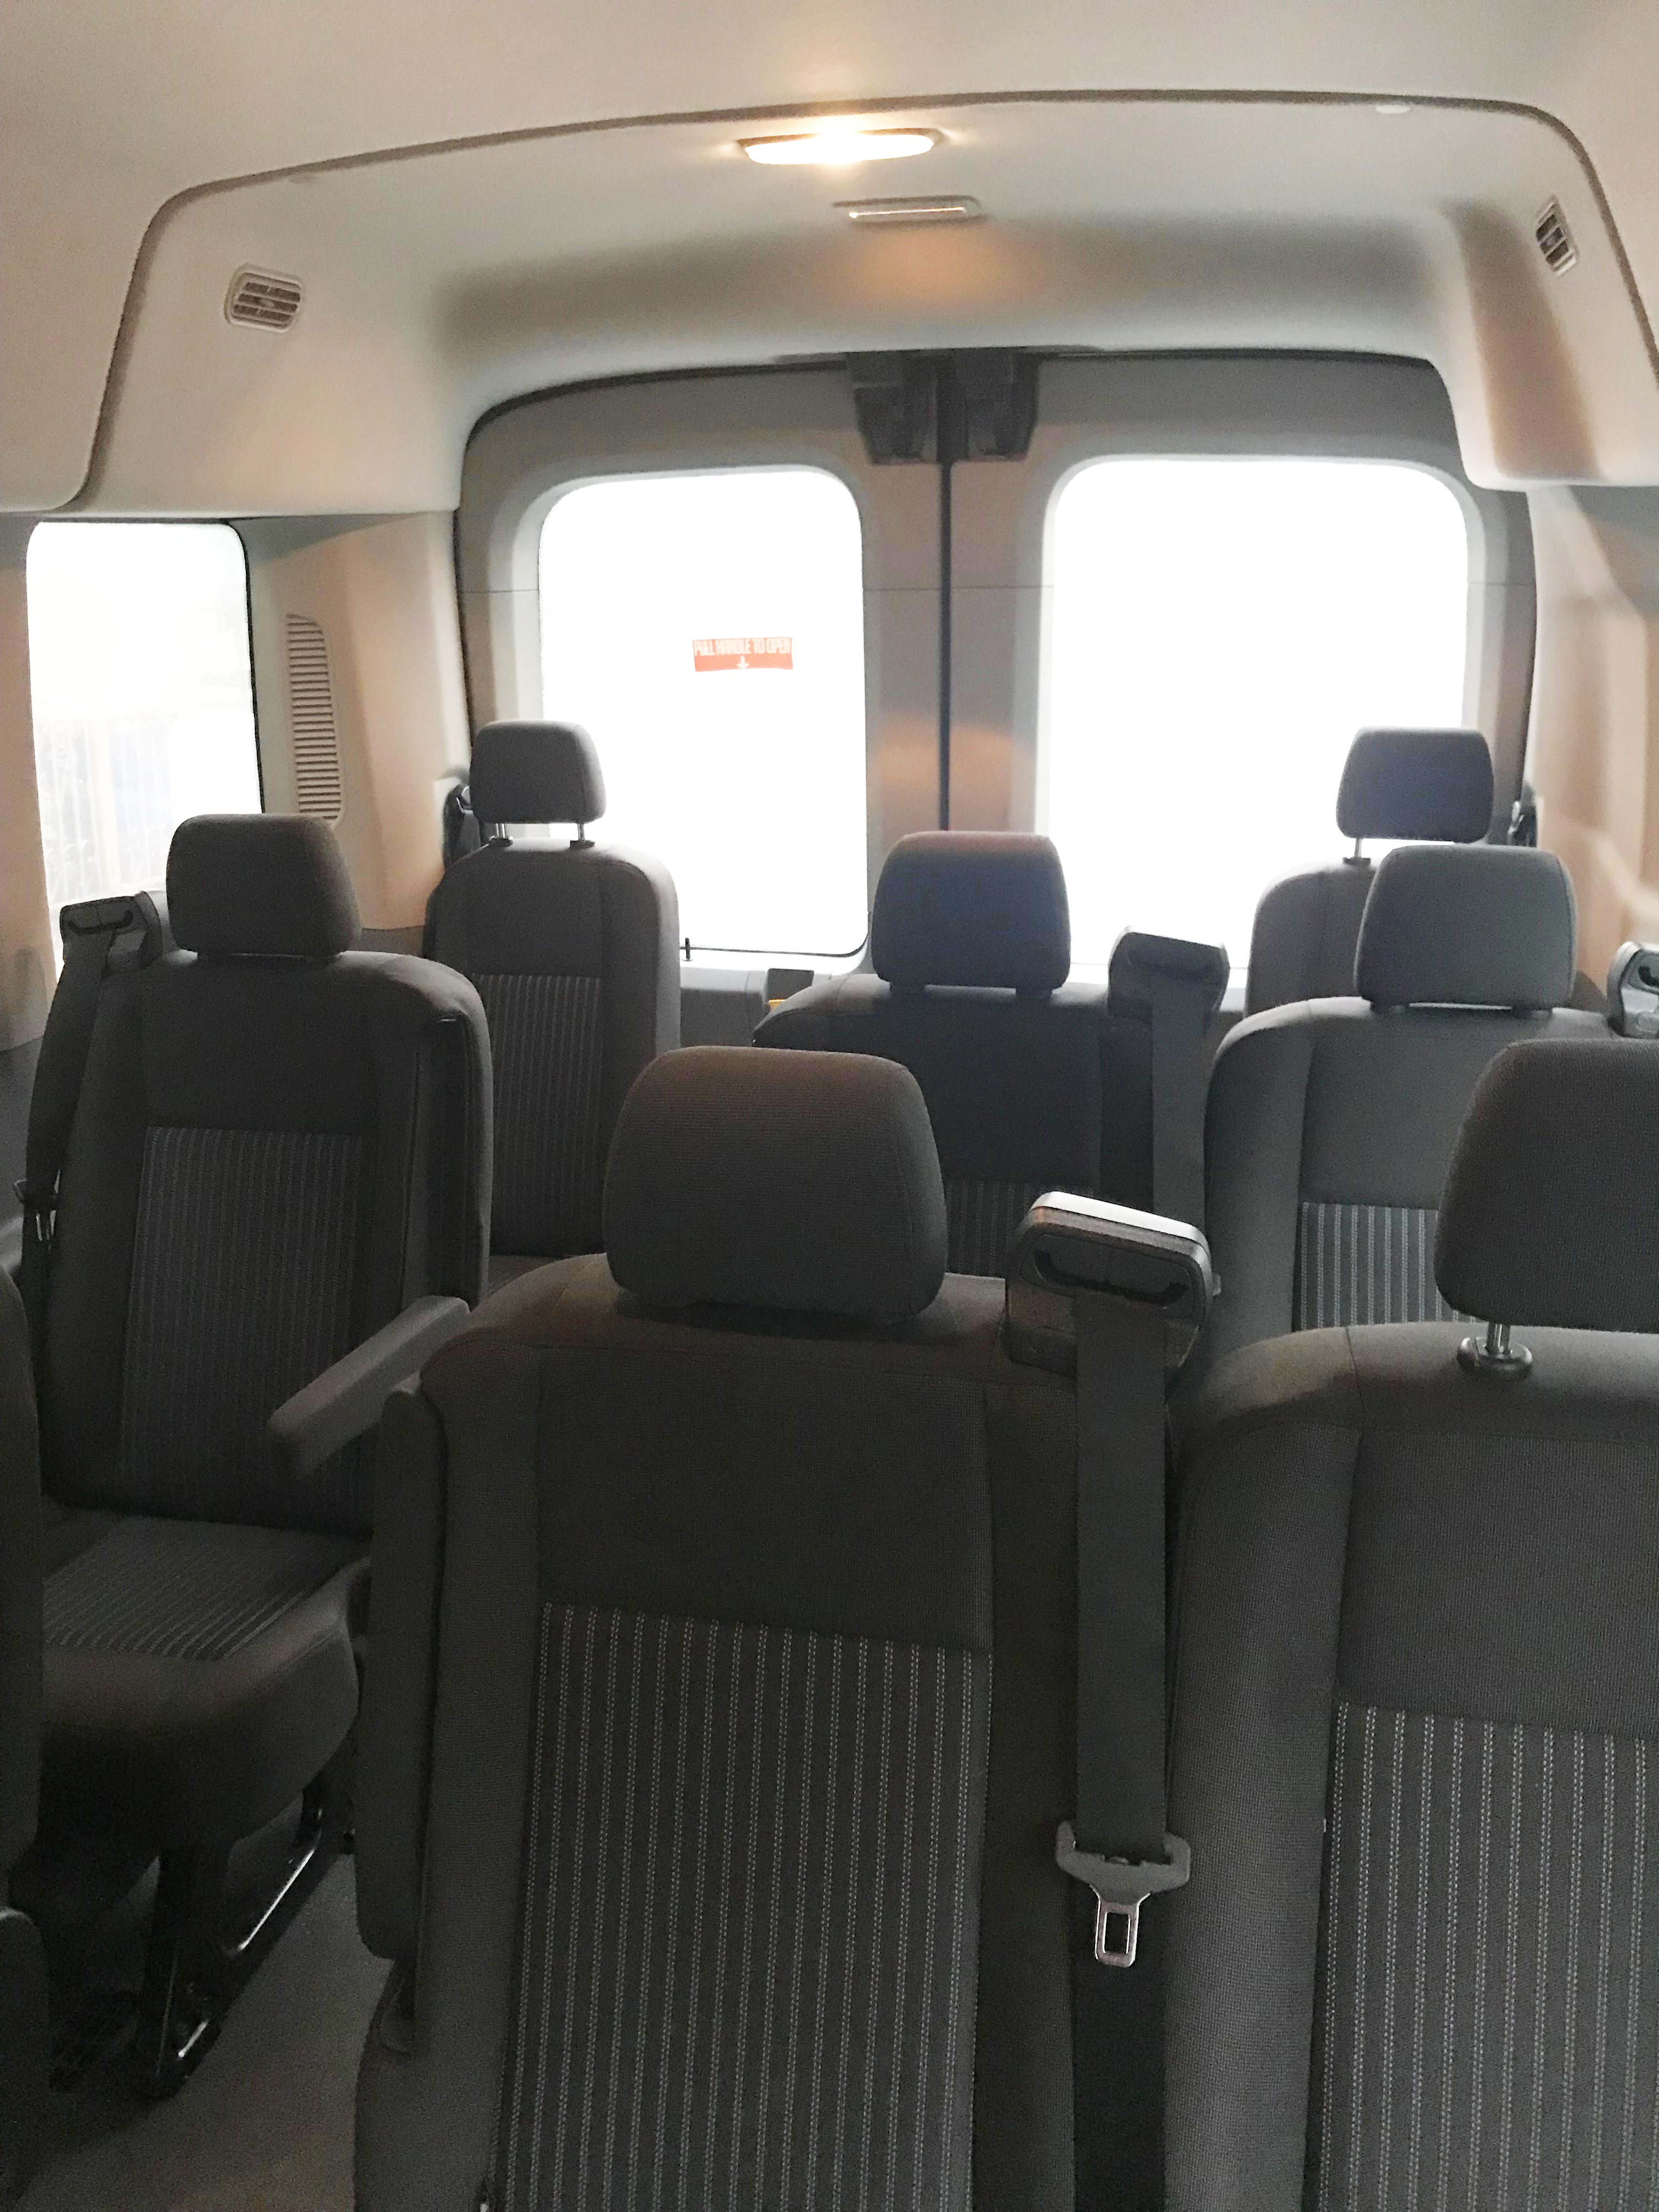 Empty seats in a van